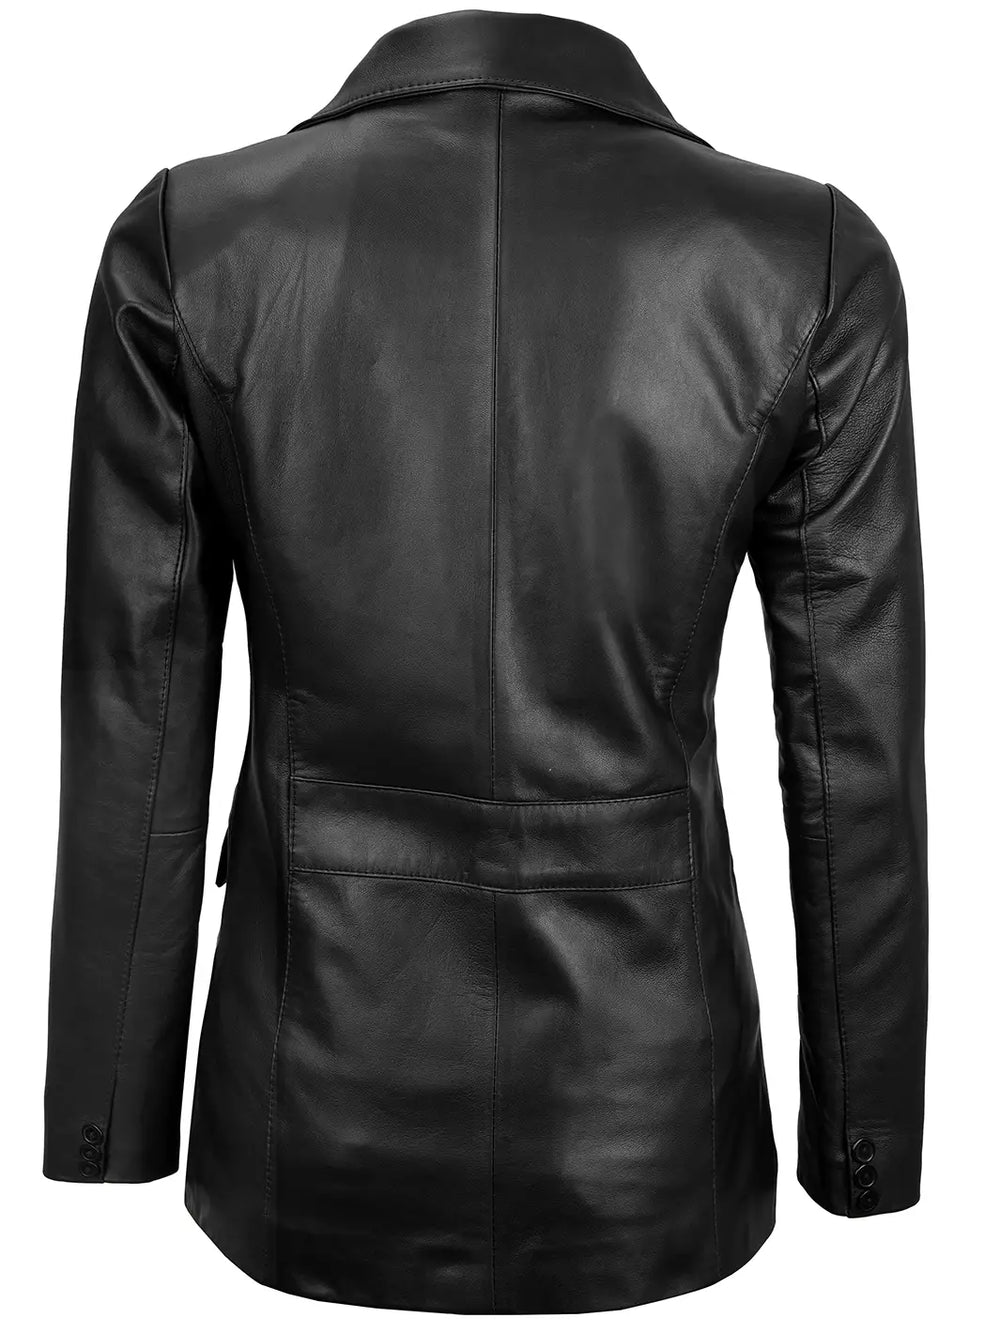 Womens leather blazer